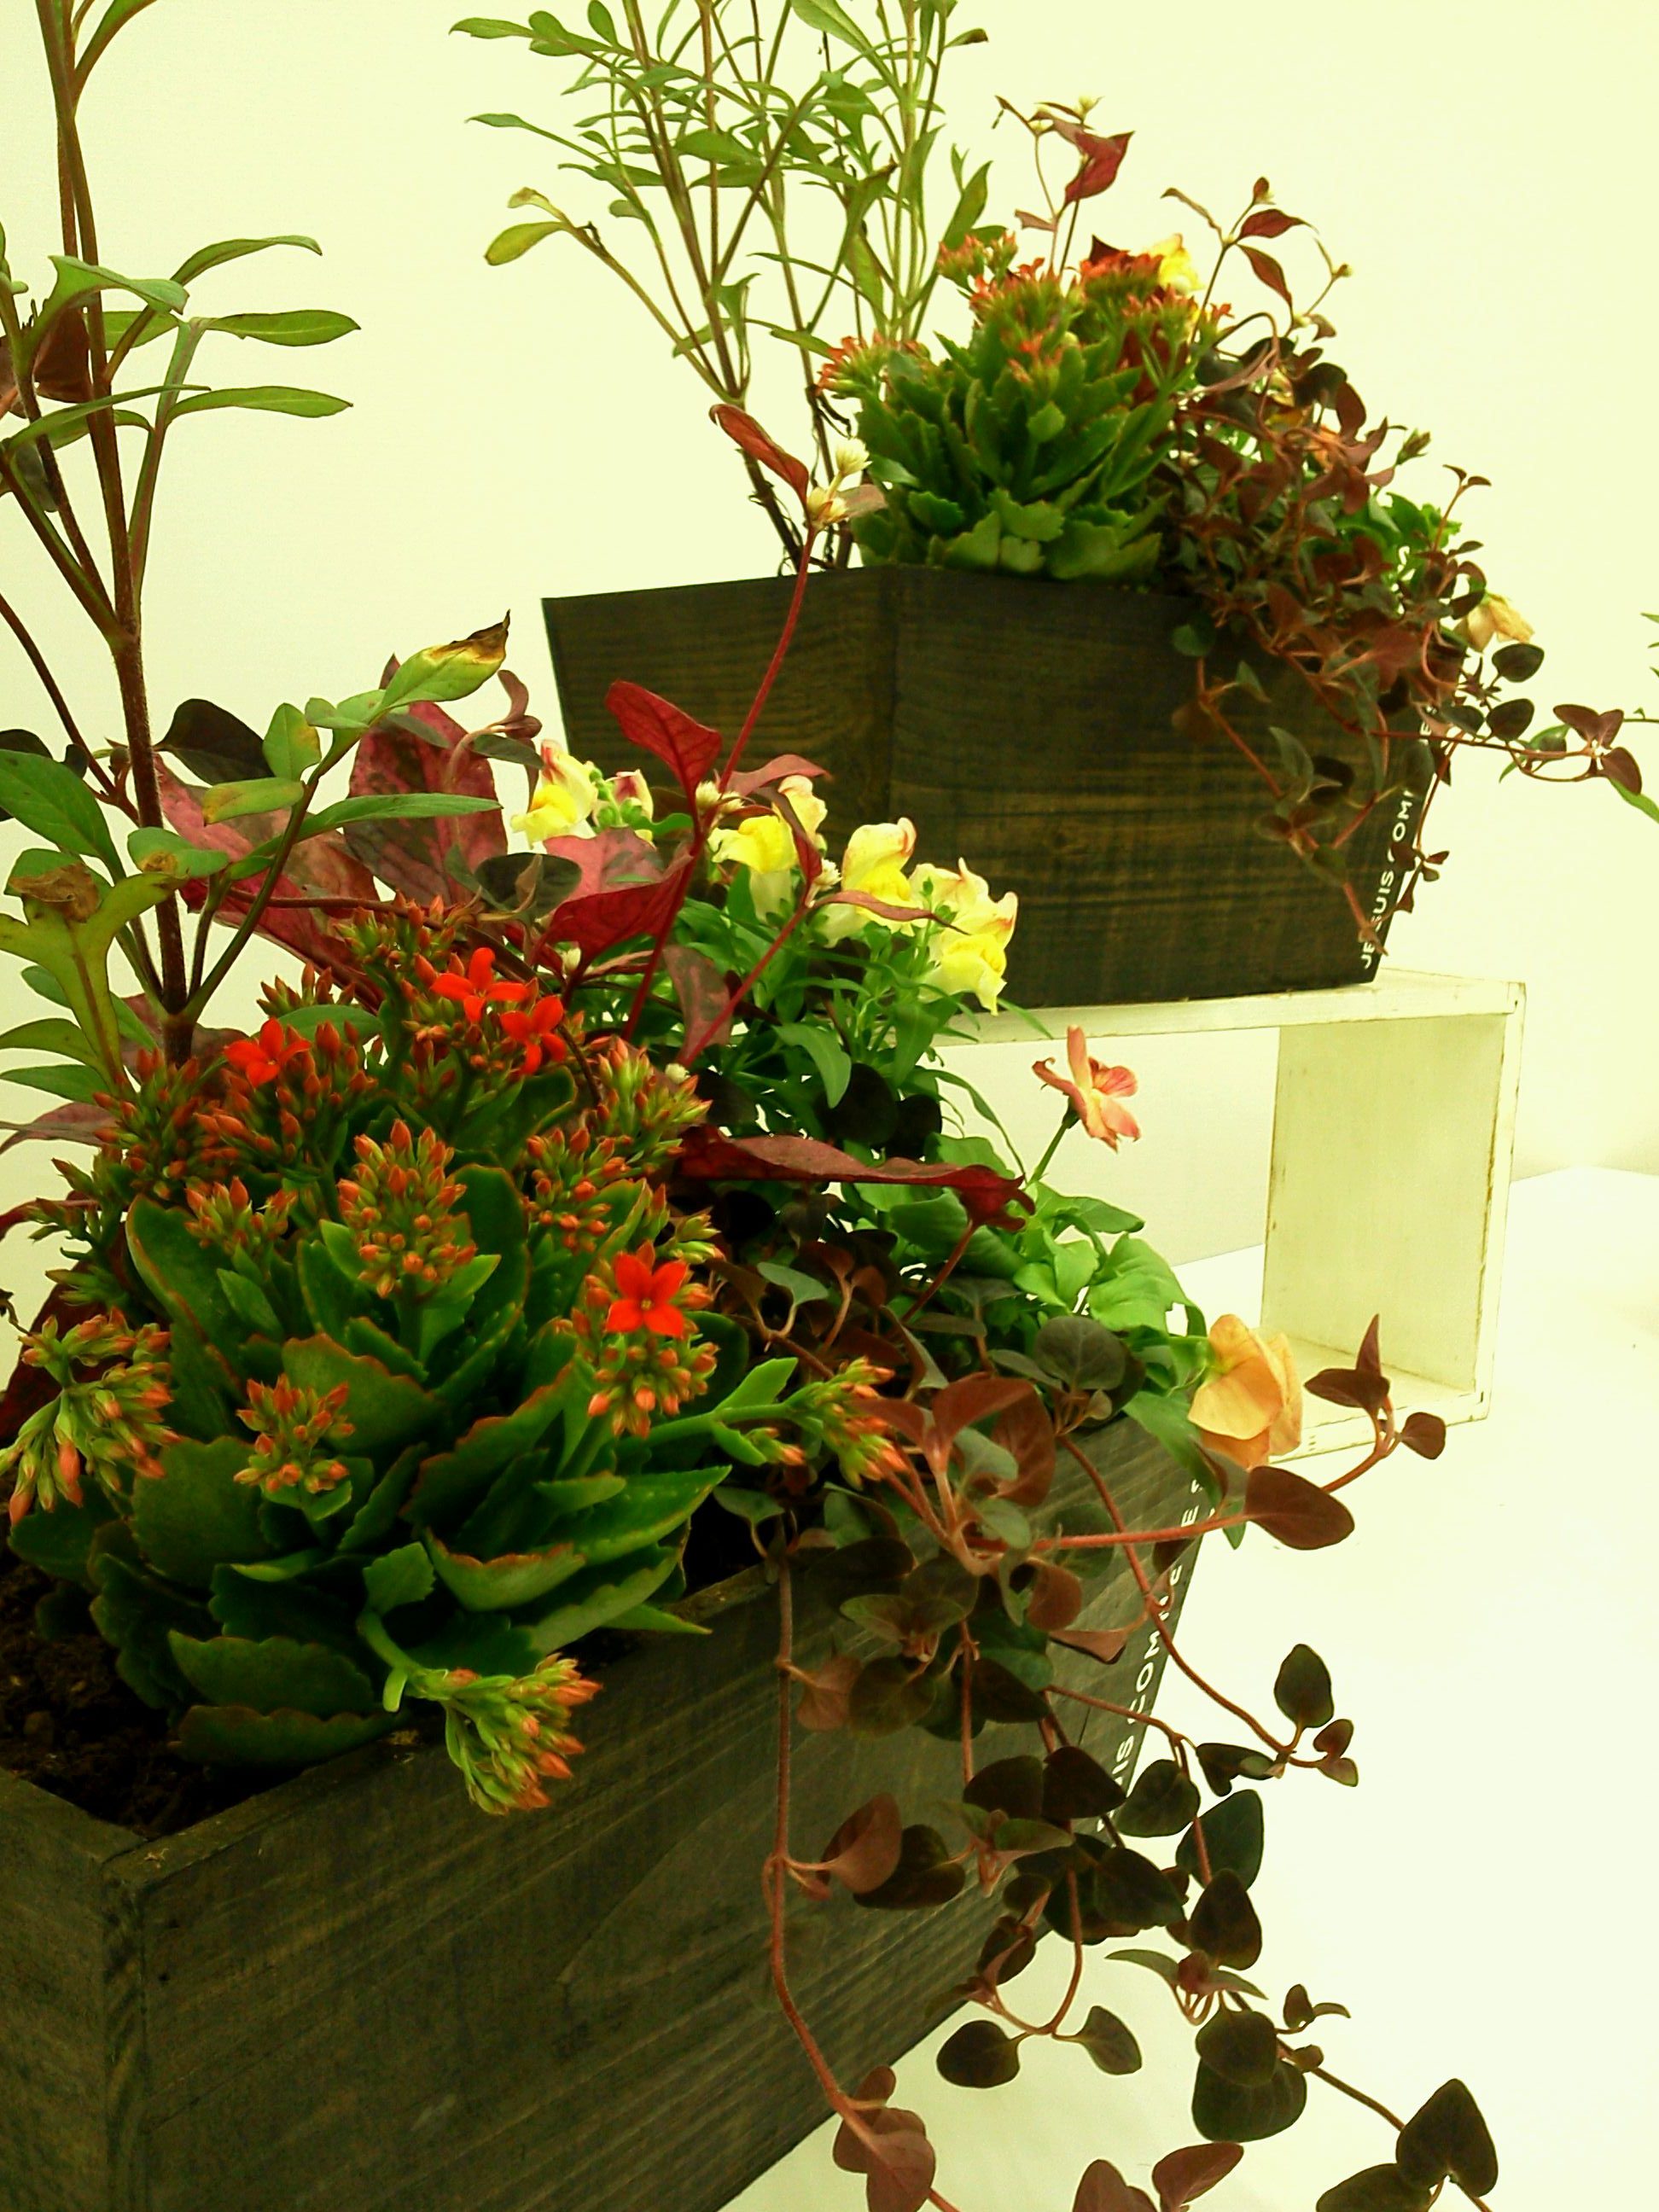 9月26日 ハロウィンの寄せ植え ひとときの園芸教室 新潟市 ガーデニング 店舗植栽 庭の困りごと みどりデザイン研究所